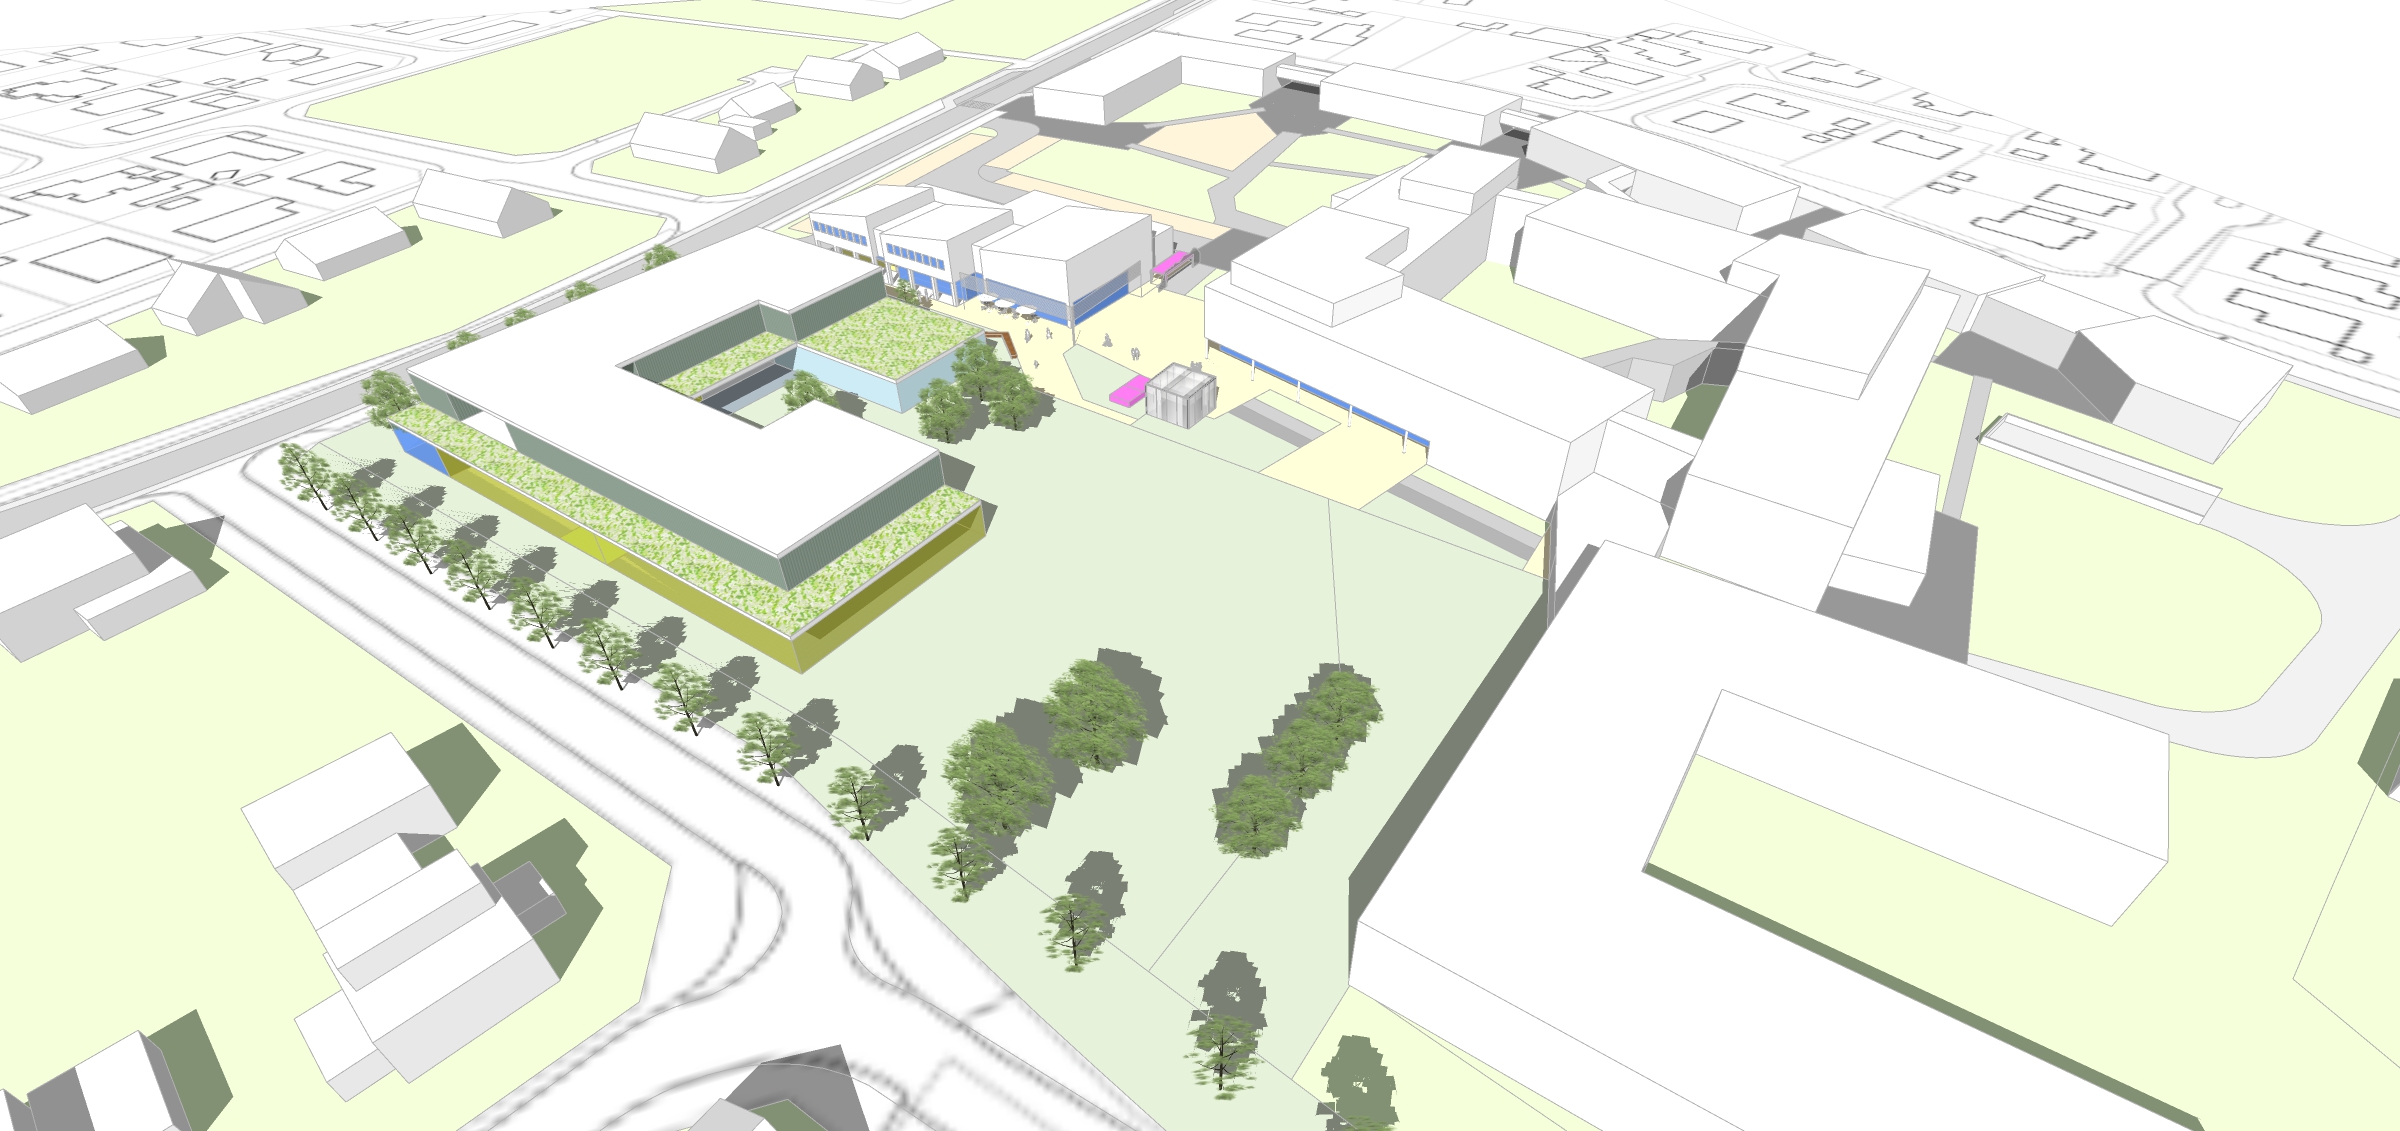 Basisschool Zedelgem Dorp krijgt nieuw gebouw op nieuwe locatie